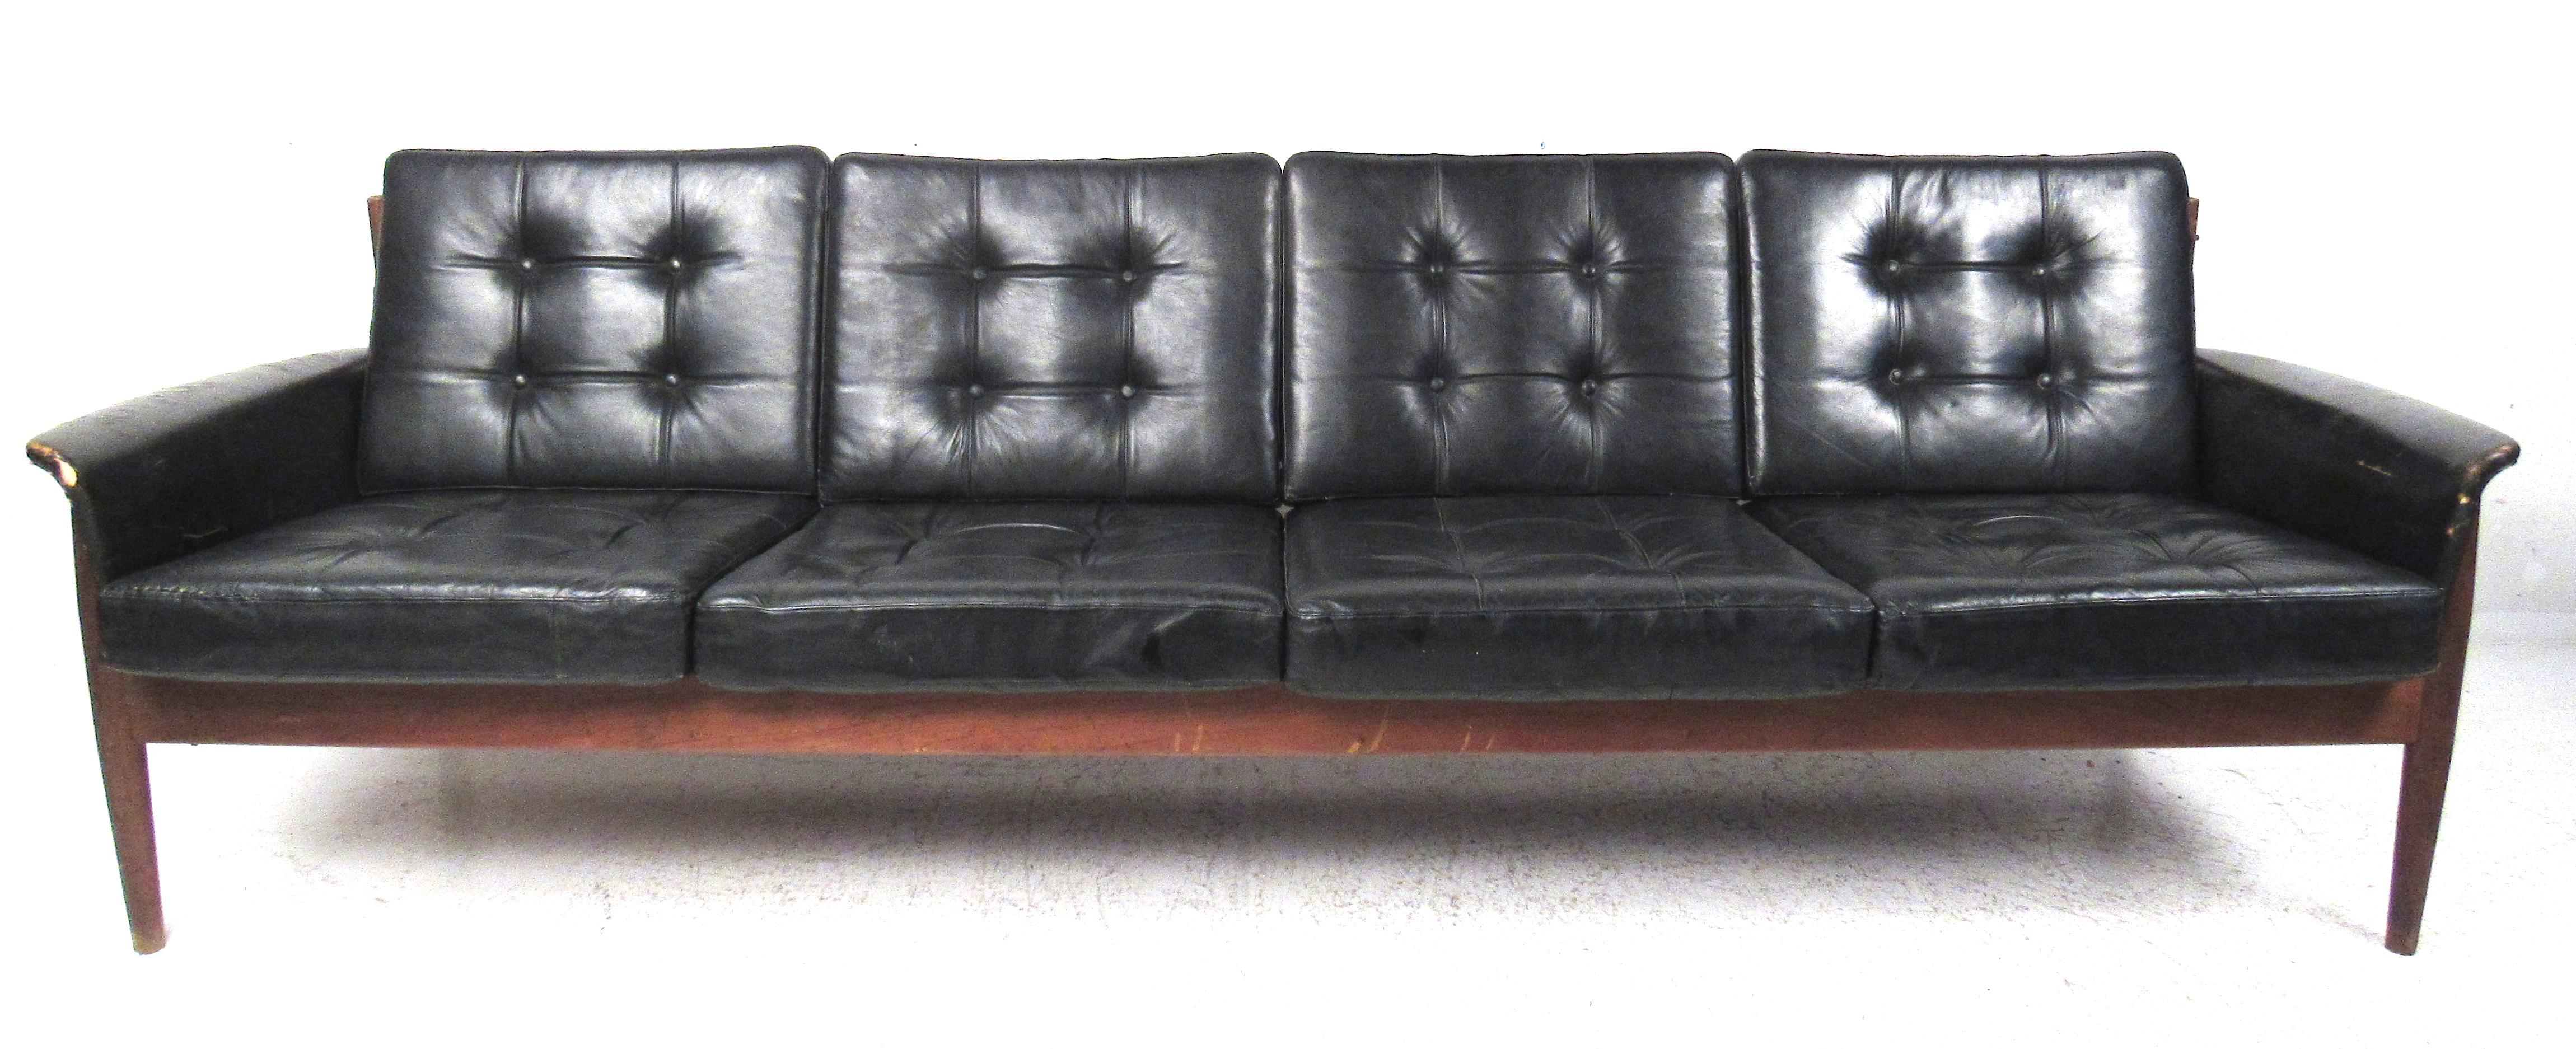 Das Sofa Modell 168/4 wurde 1962 von Charles 'Fearnley' France, dem Chef von France & Son, entworfen. Produziert
Dieses Sofa aus massivem Teakholz mit schwarzem Lederbezug ist identisch mit einem von Grete Jalk entworfenen Sofa, mit Ausnahme der